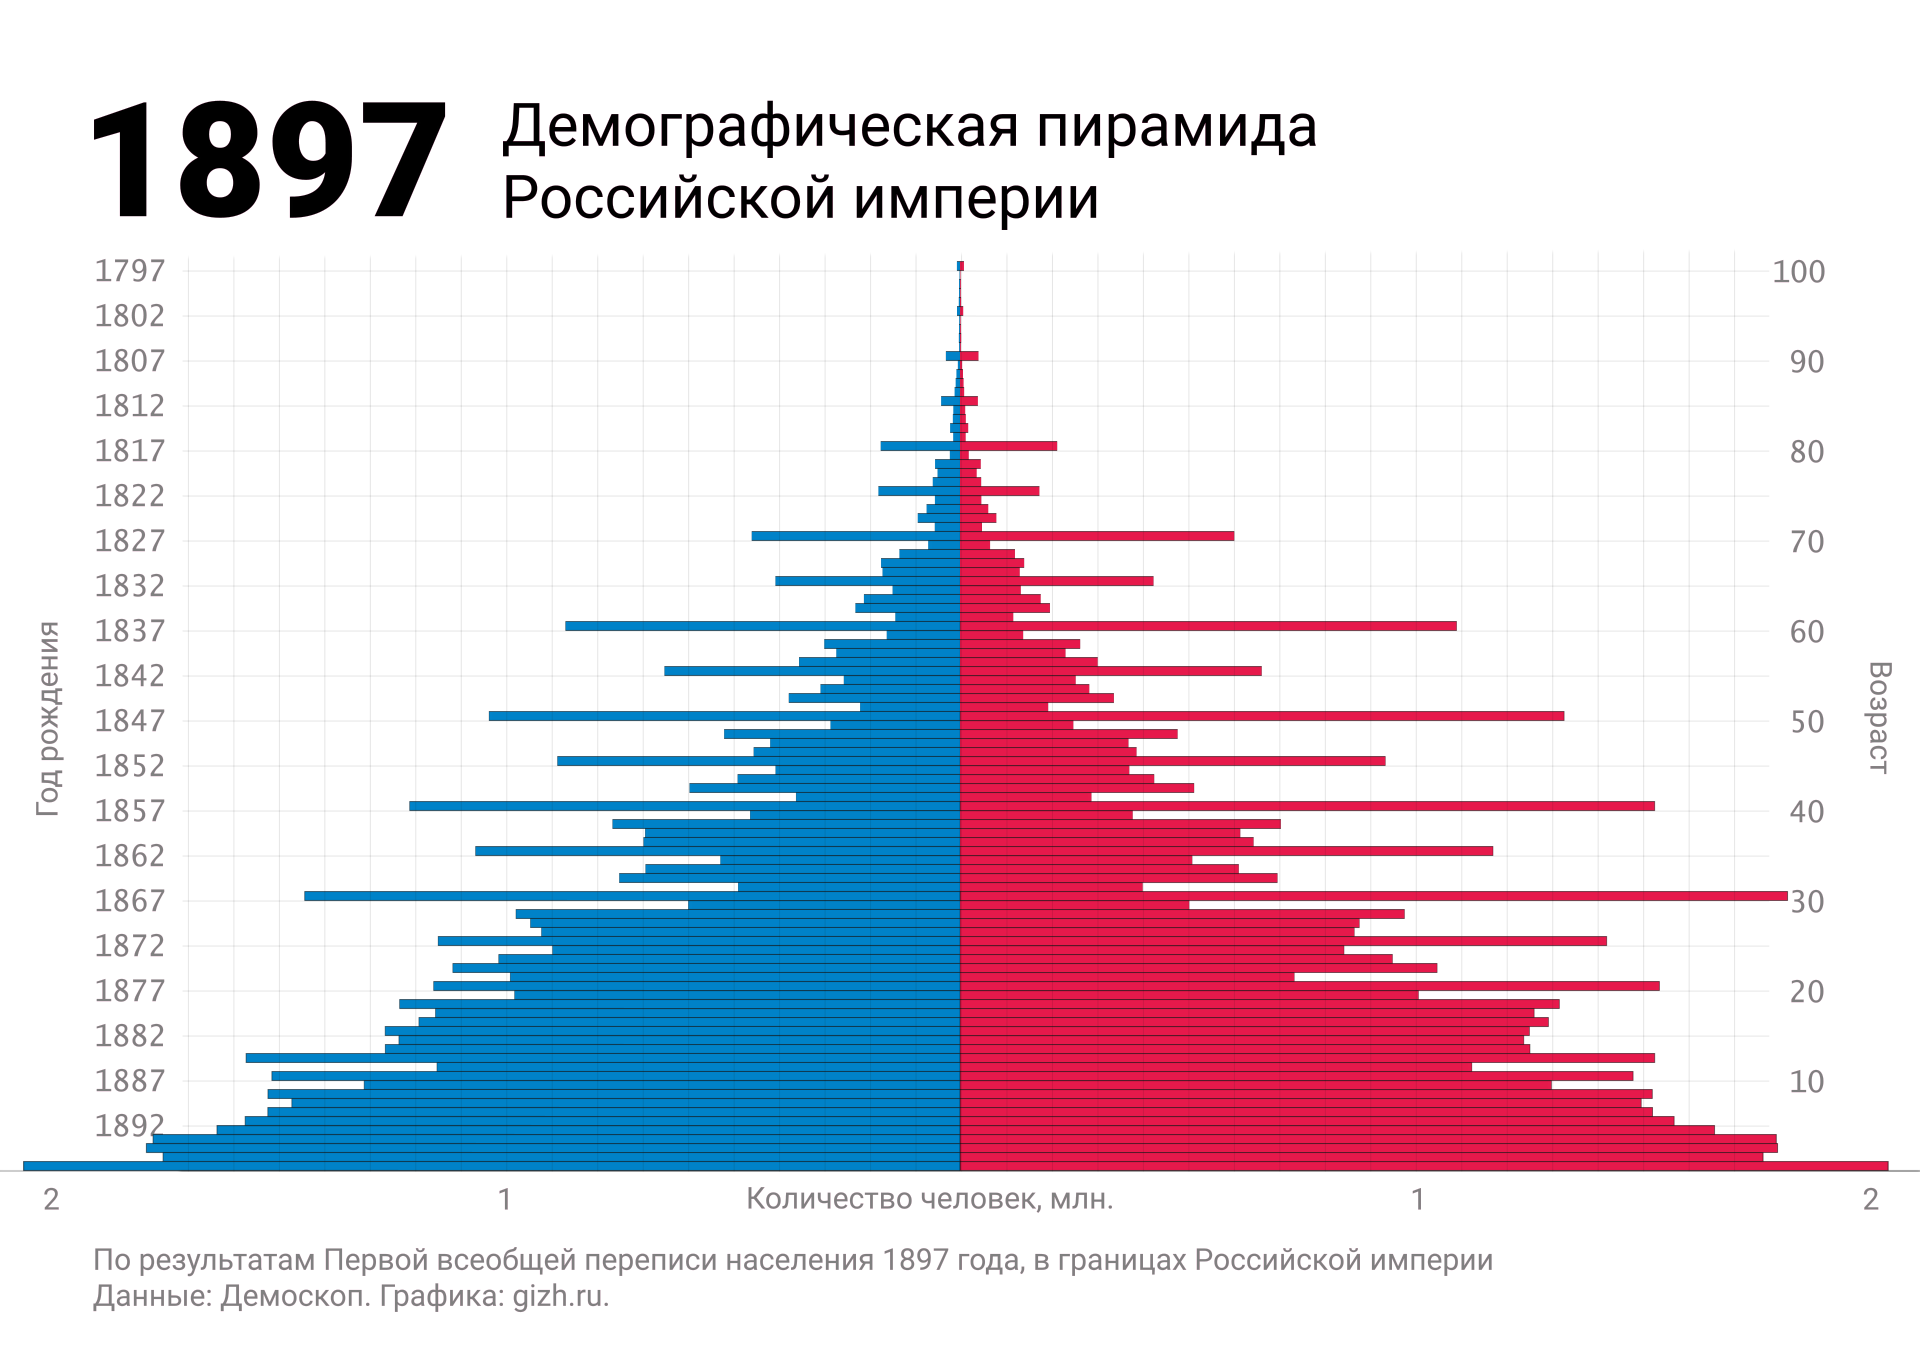 Демографическая (половозрастная) пирамида России по первой переписи 1897